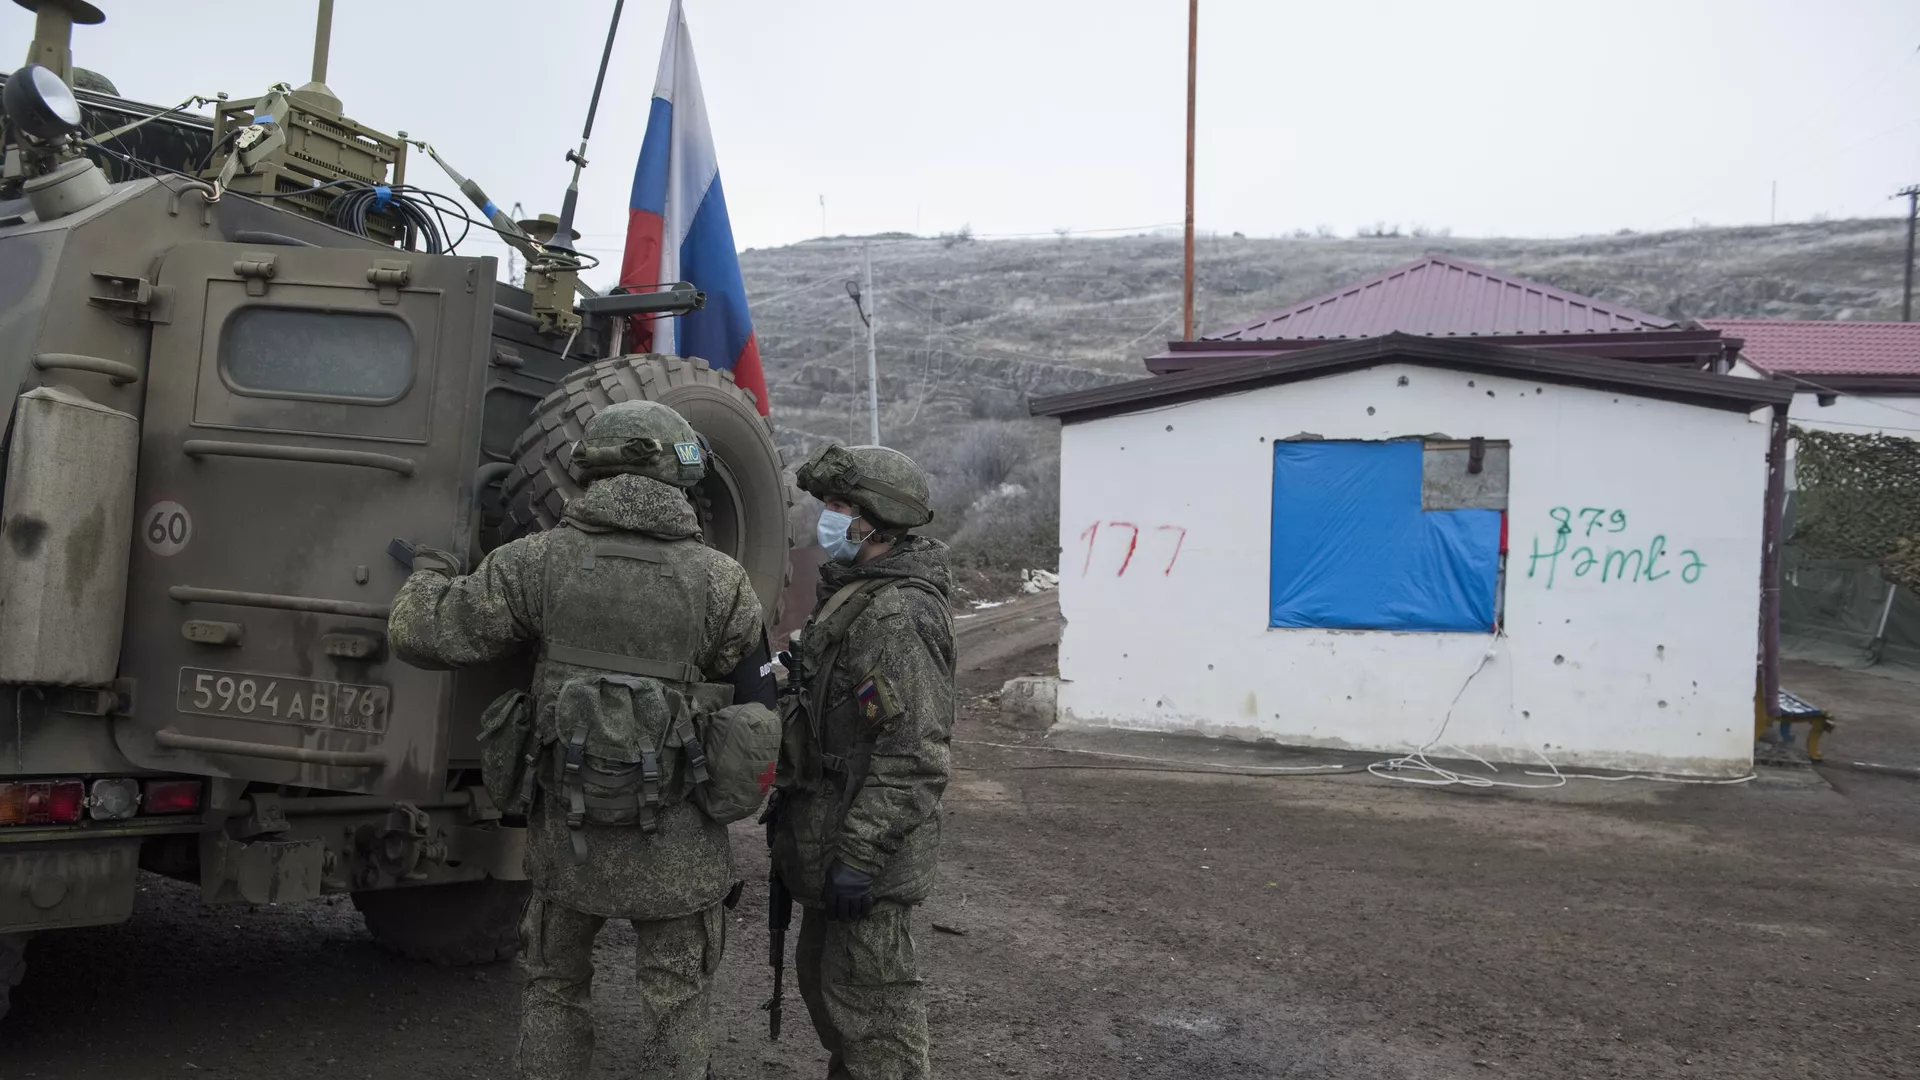 Командованием РМК продолжается переговорный процесс по возобновлению движения по Лачинскому коридору: МО РФ